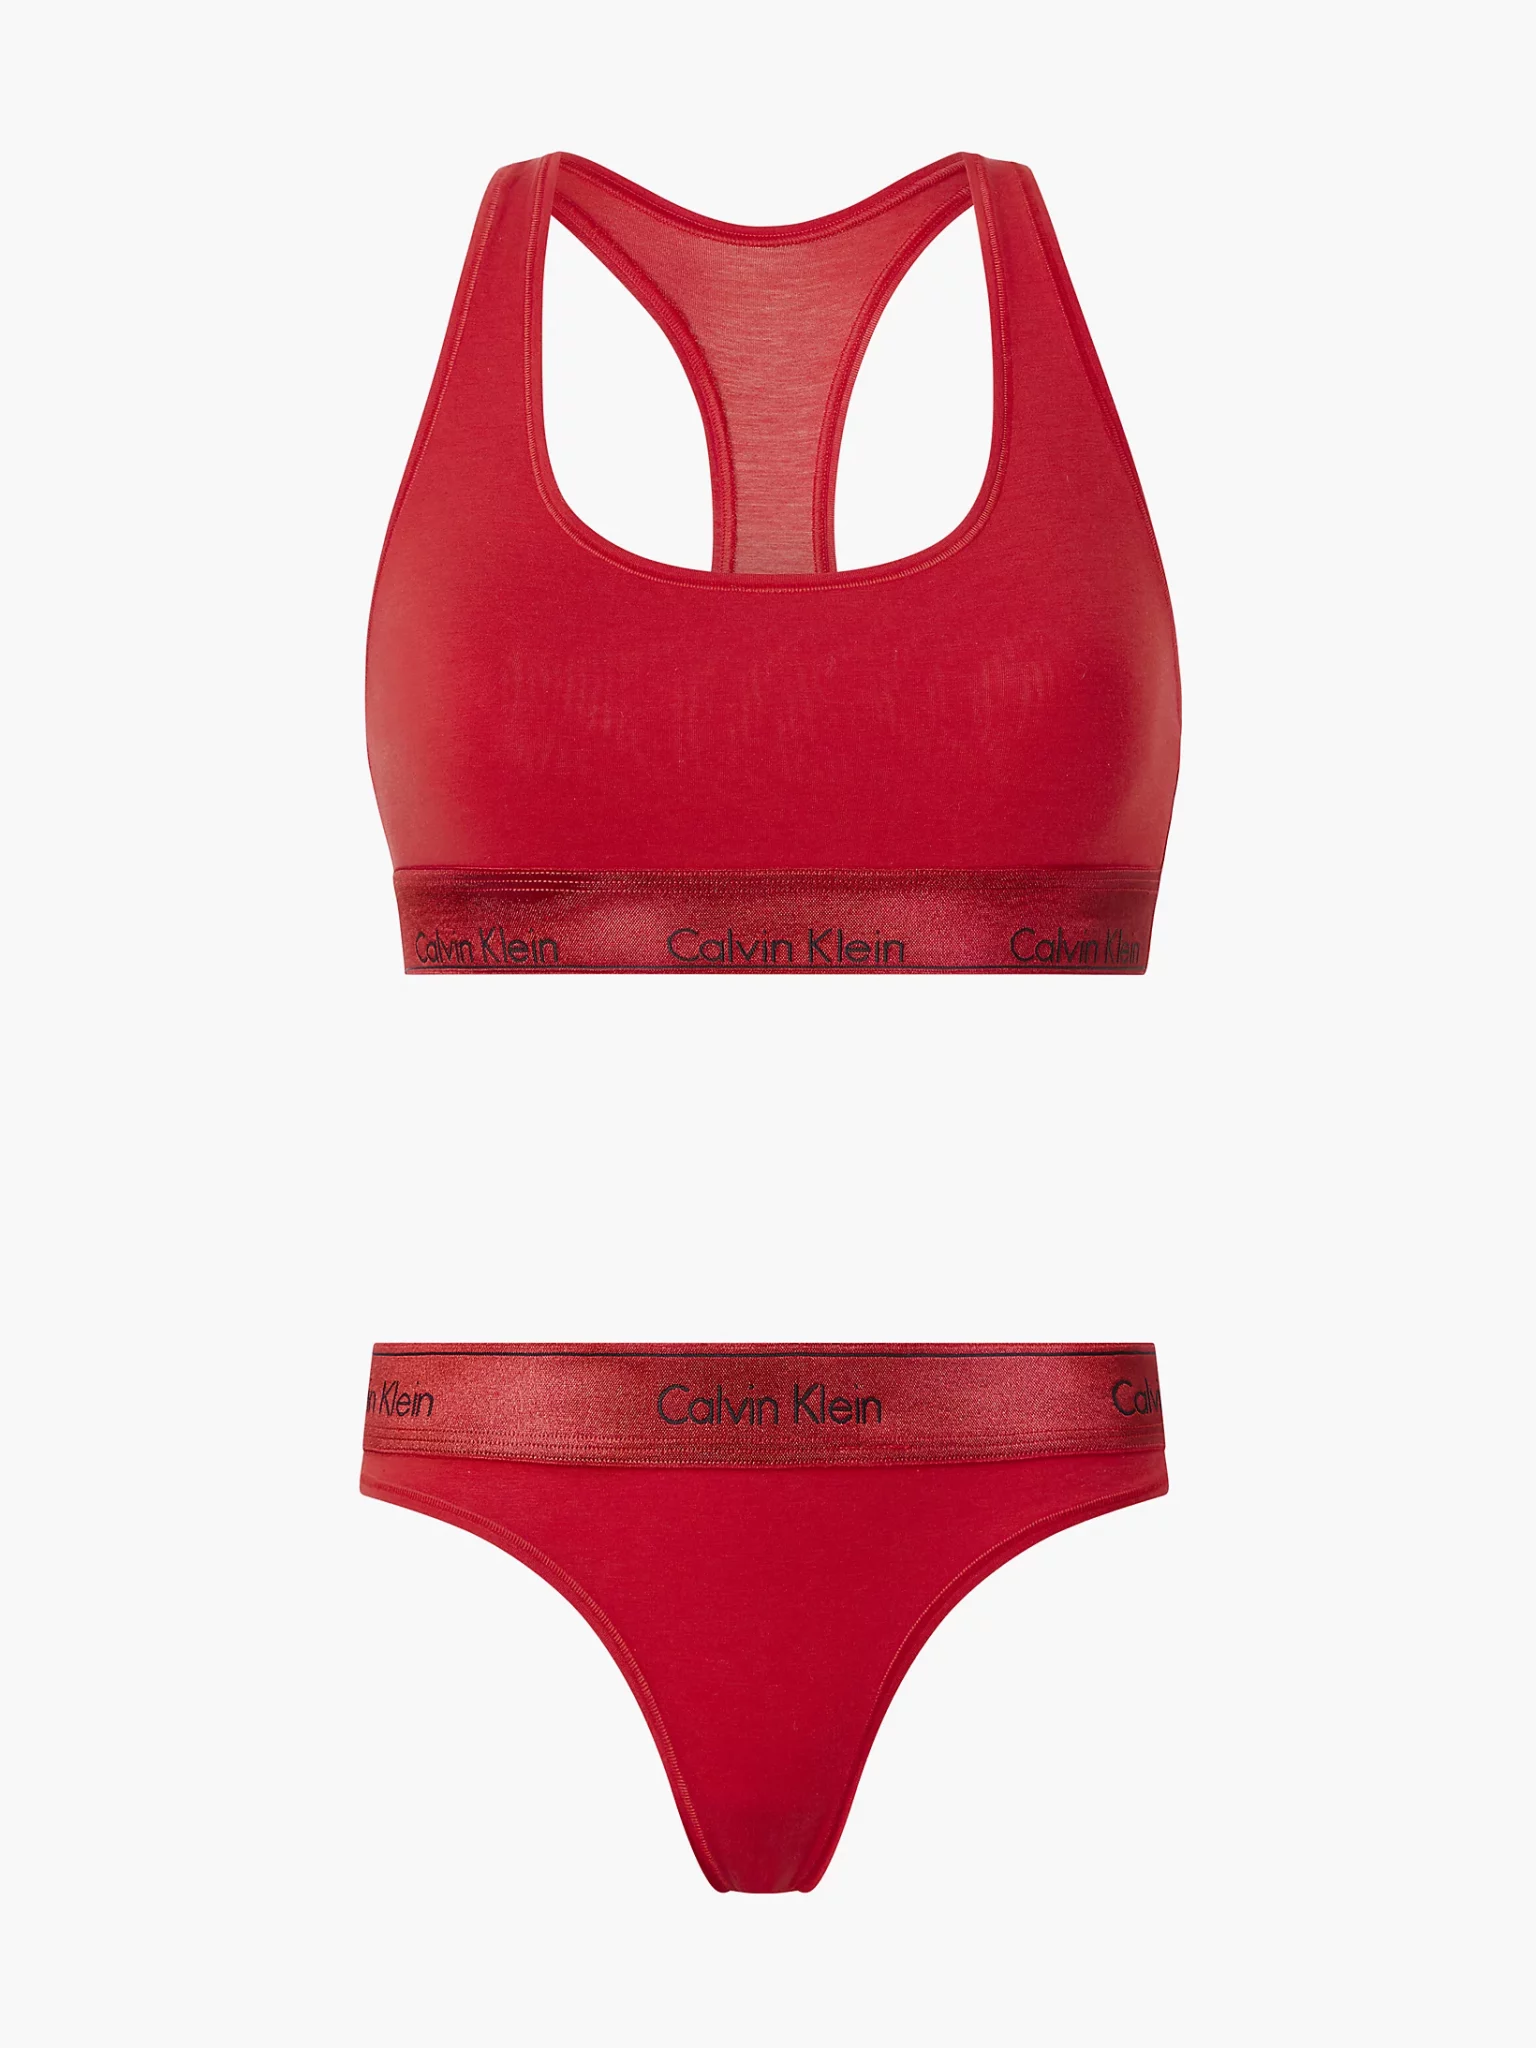 Calvin Klein Underwear UNLINED BRALETTE - Bustier - rouge/red